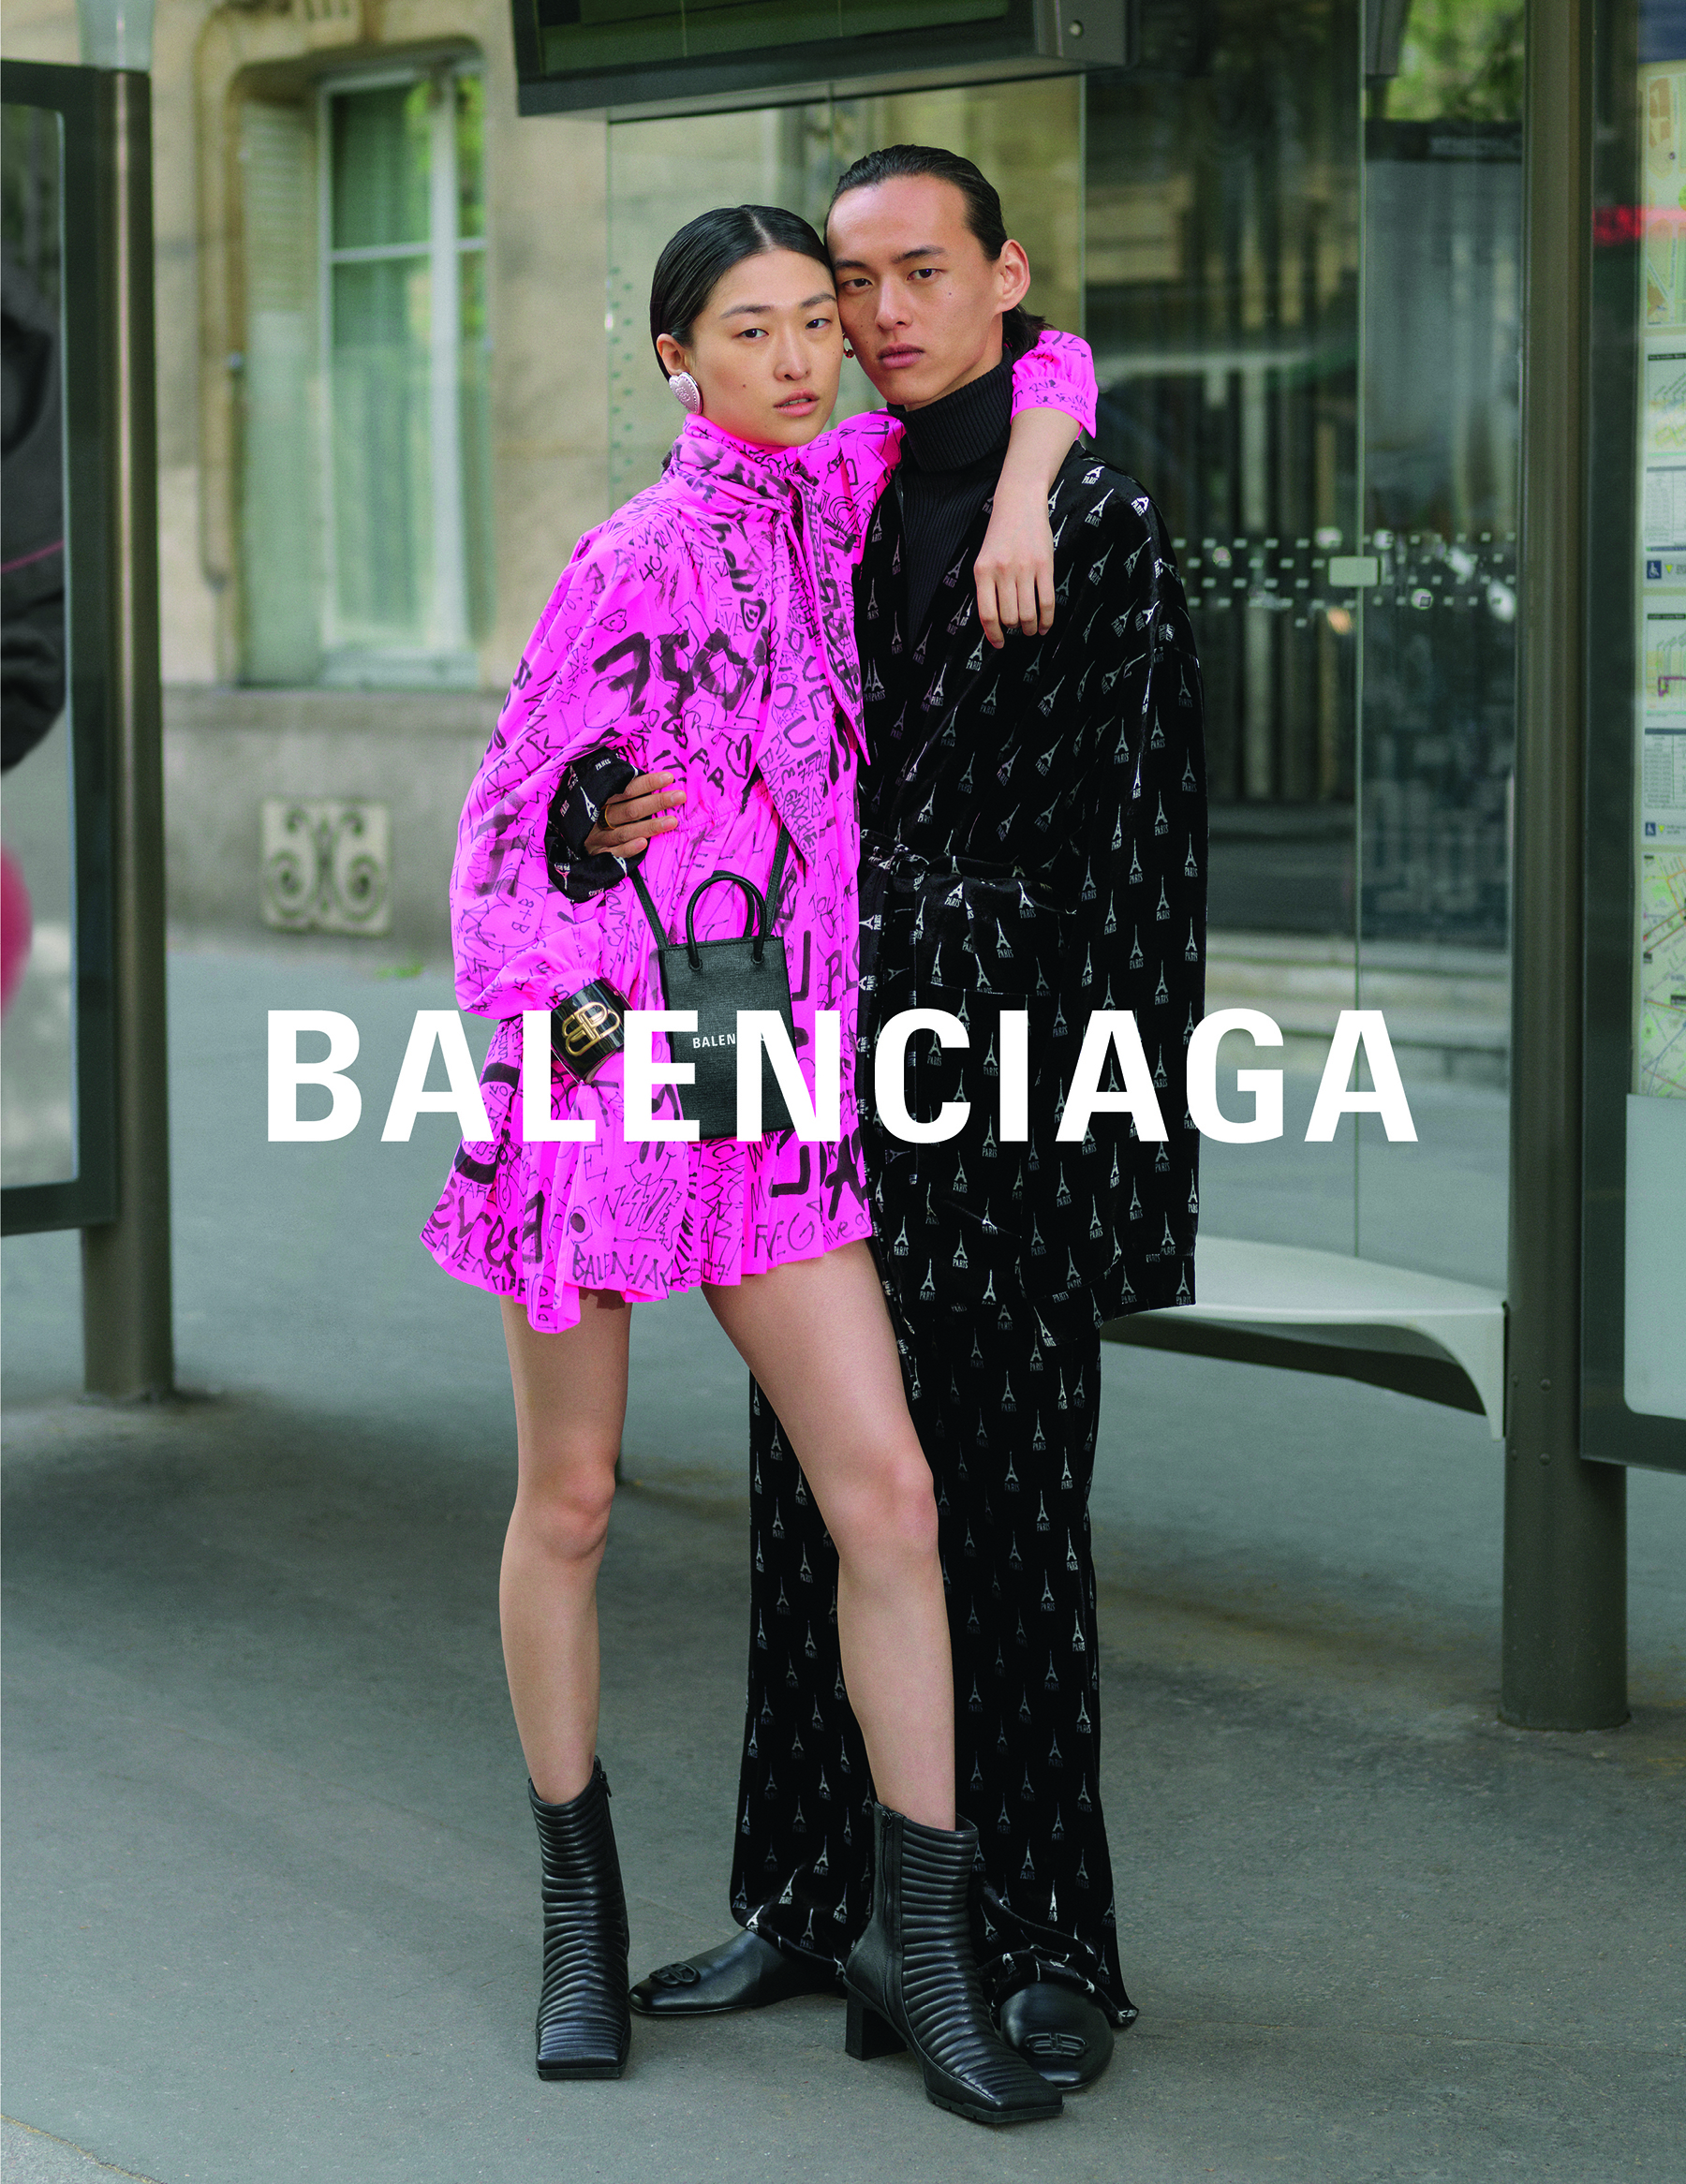 Balenciaga Fall 2013 Ad Campaign featuring Le Dix Tote bag  Spotted Fashion